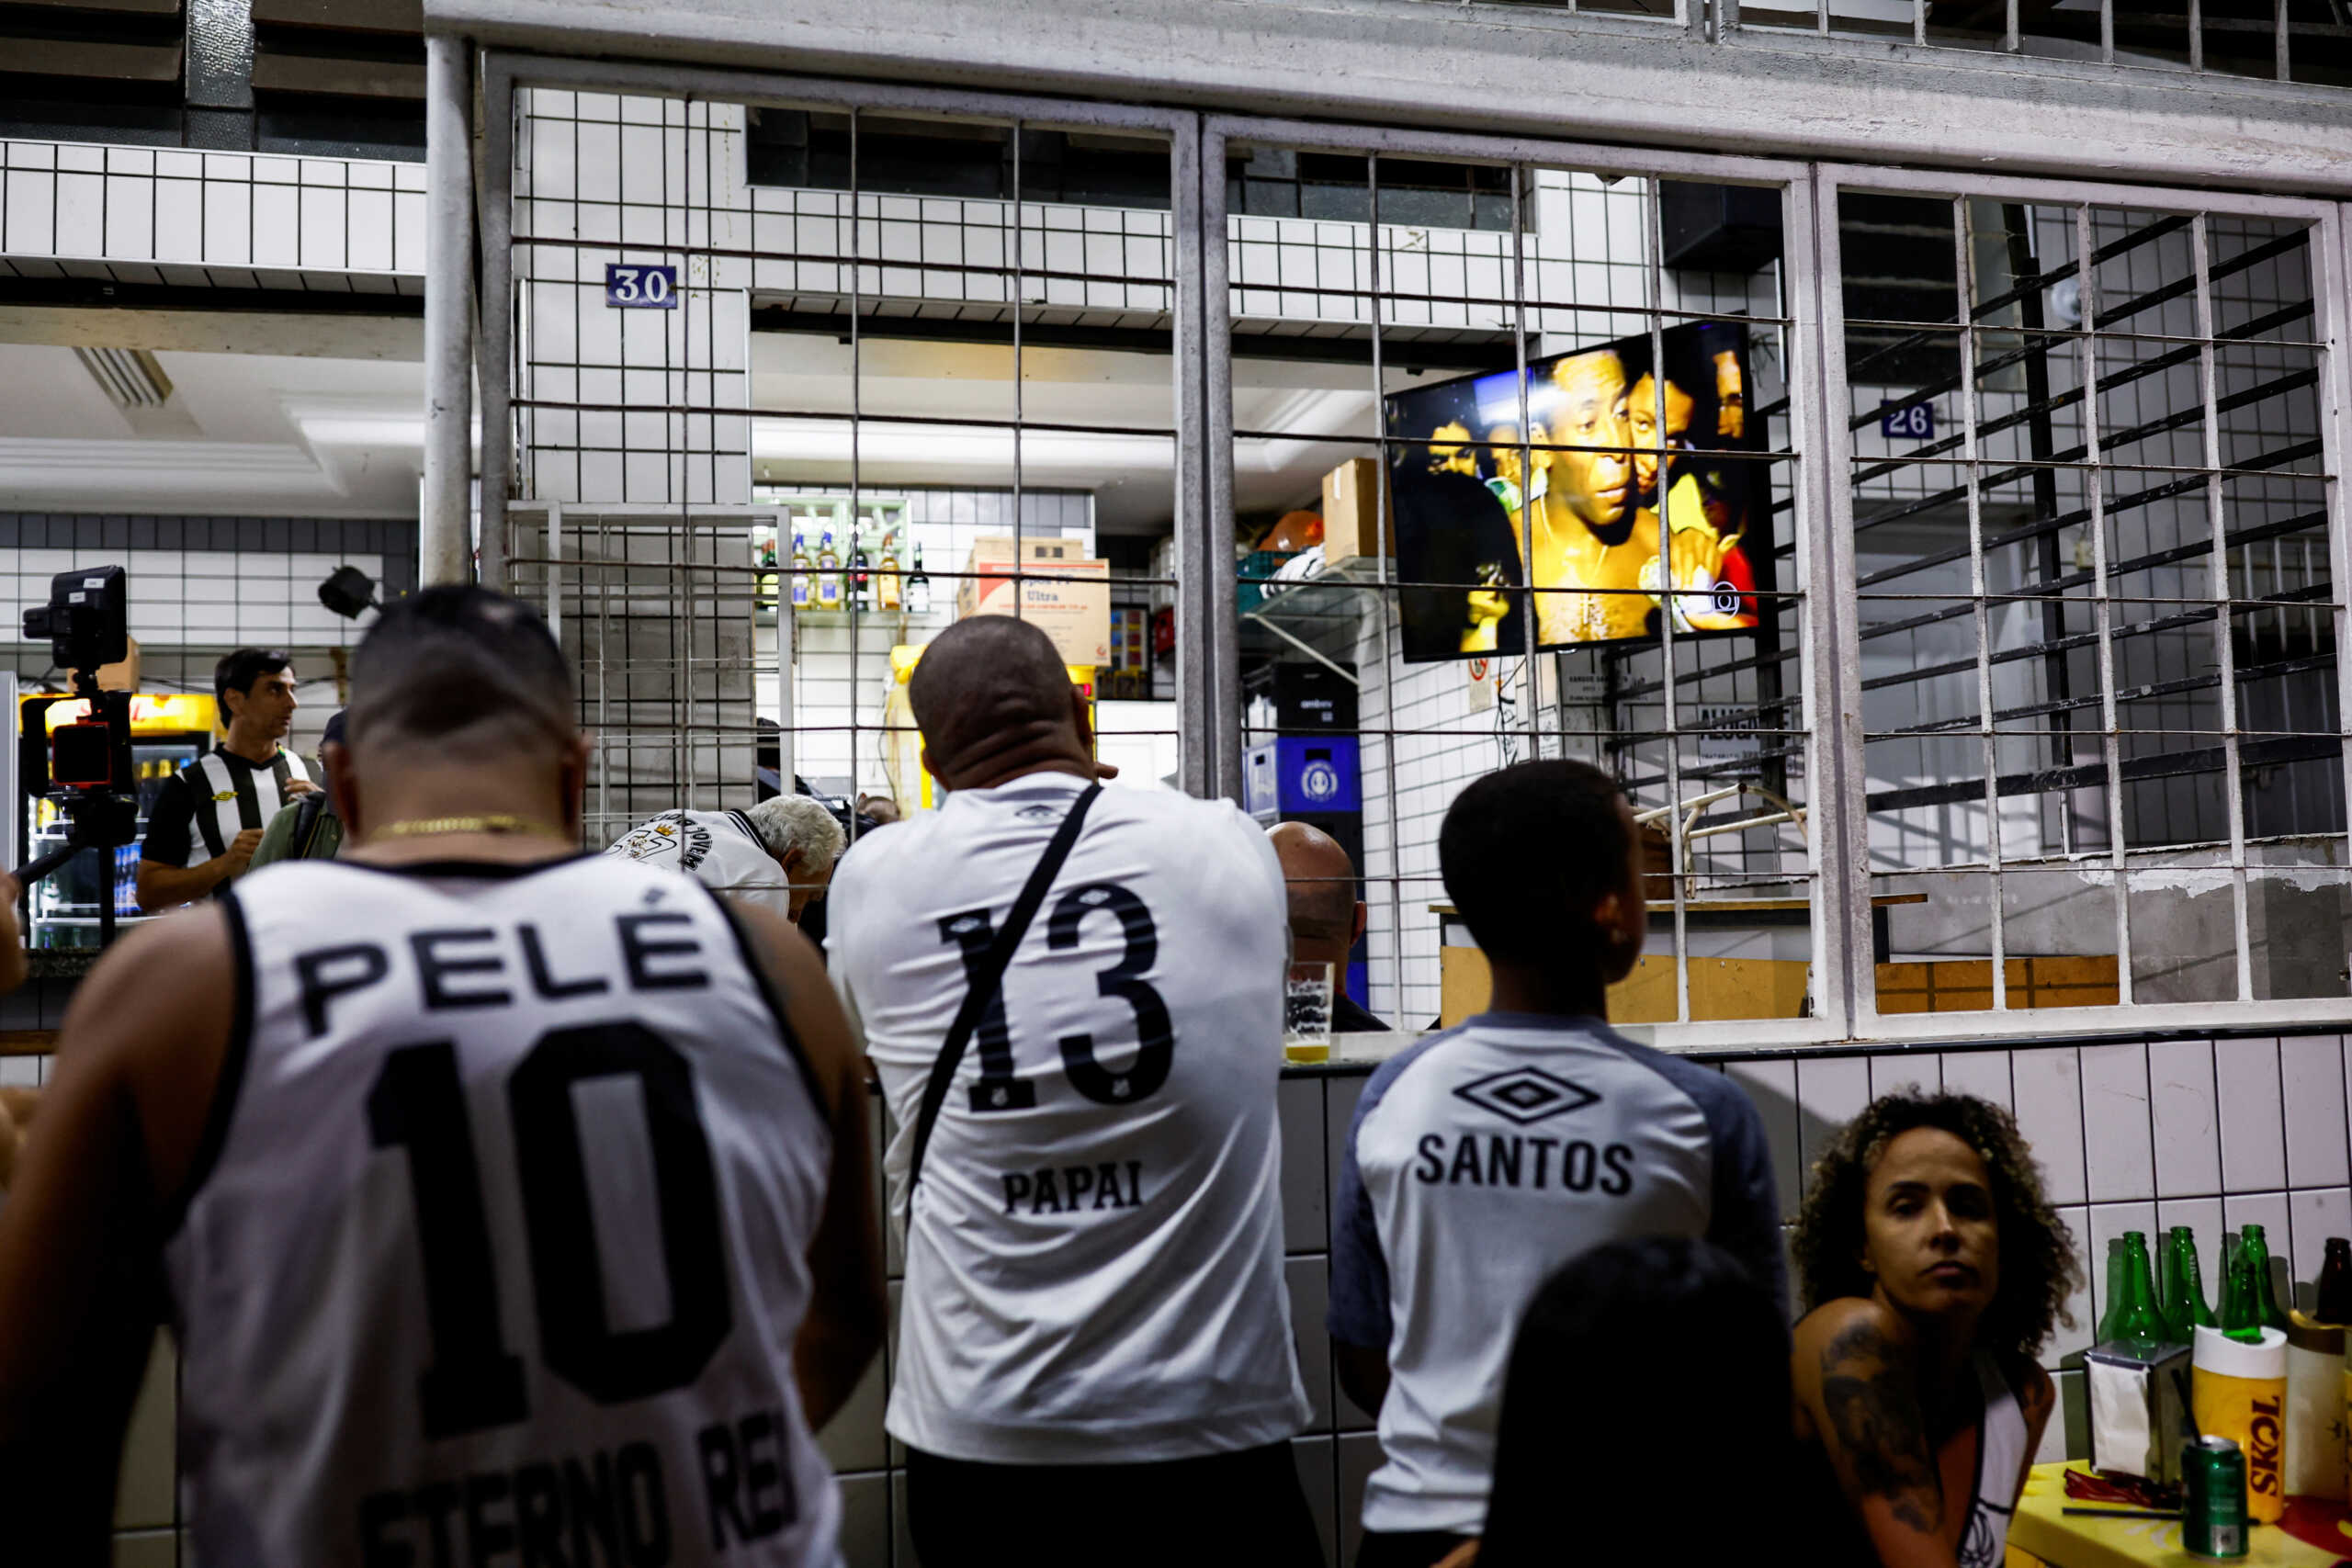 Πελέ: Τη Δευτέρα το λαϊκό προσκύνημα της σορού του «βασιλιά» στο γήπεδο της Σάντος – Τριήμερο πένθος στην Βραζιλία